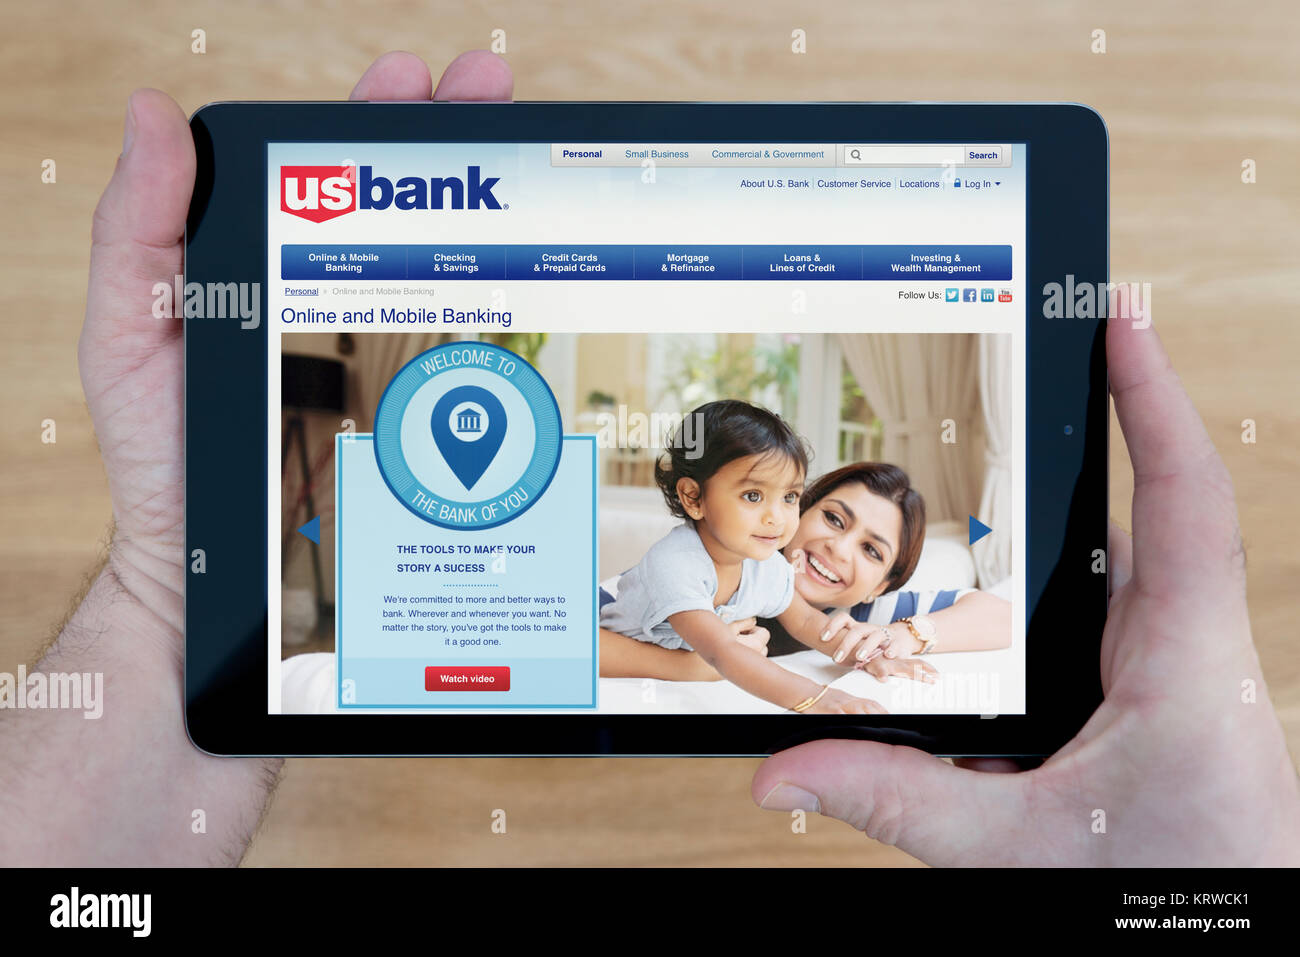 Un homme regarde le site web de banque US sur son iPad tablet device, tourné contre une table en bois page contexte (usage éditorial uniquement) Banque D'Images